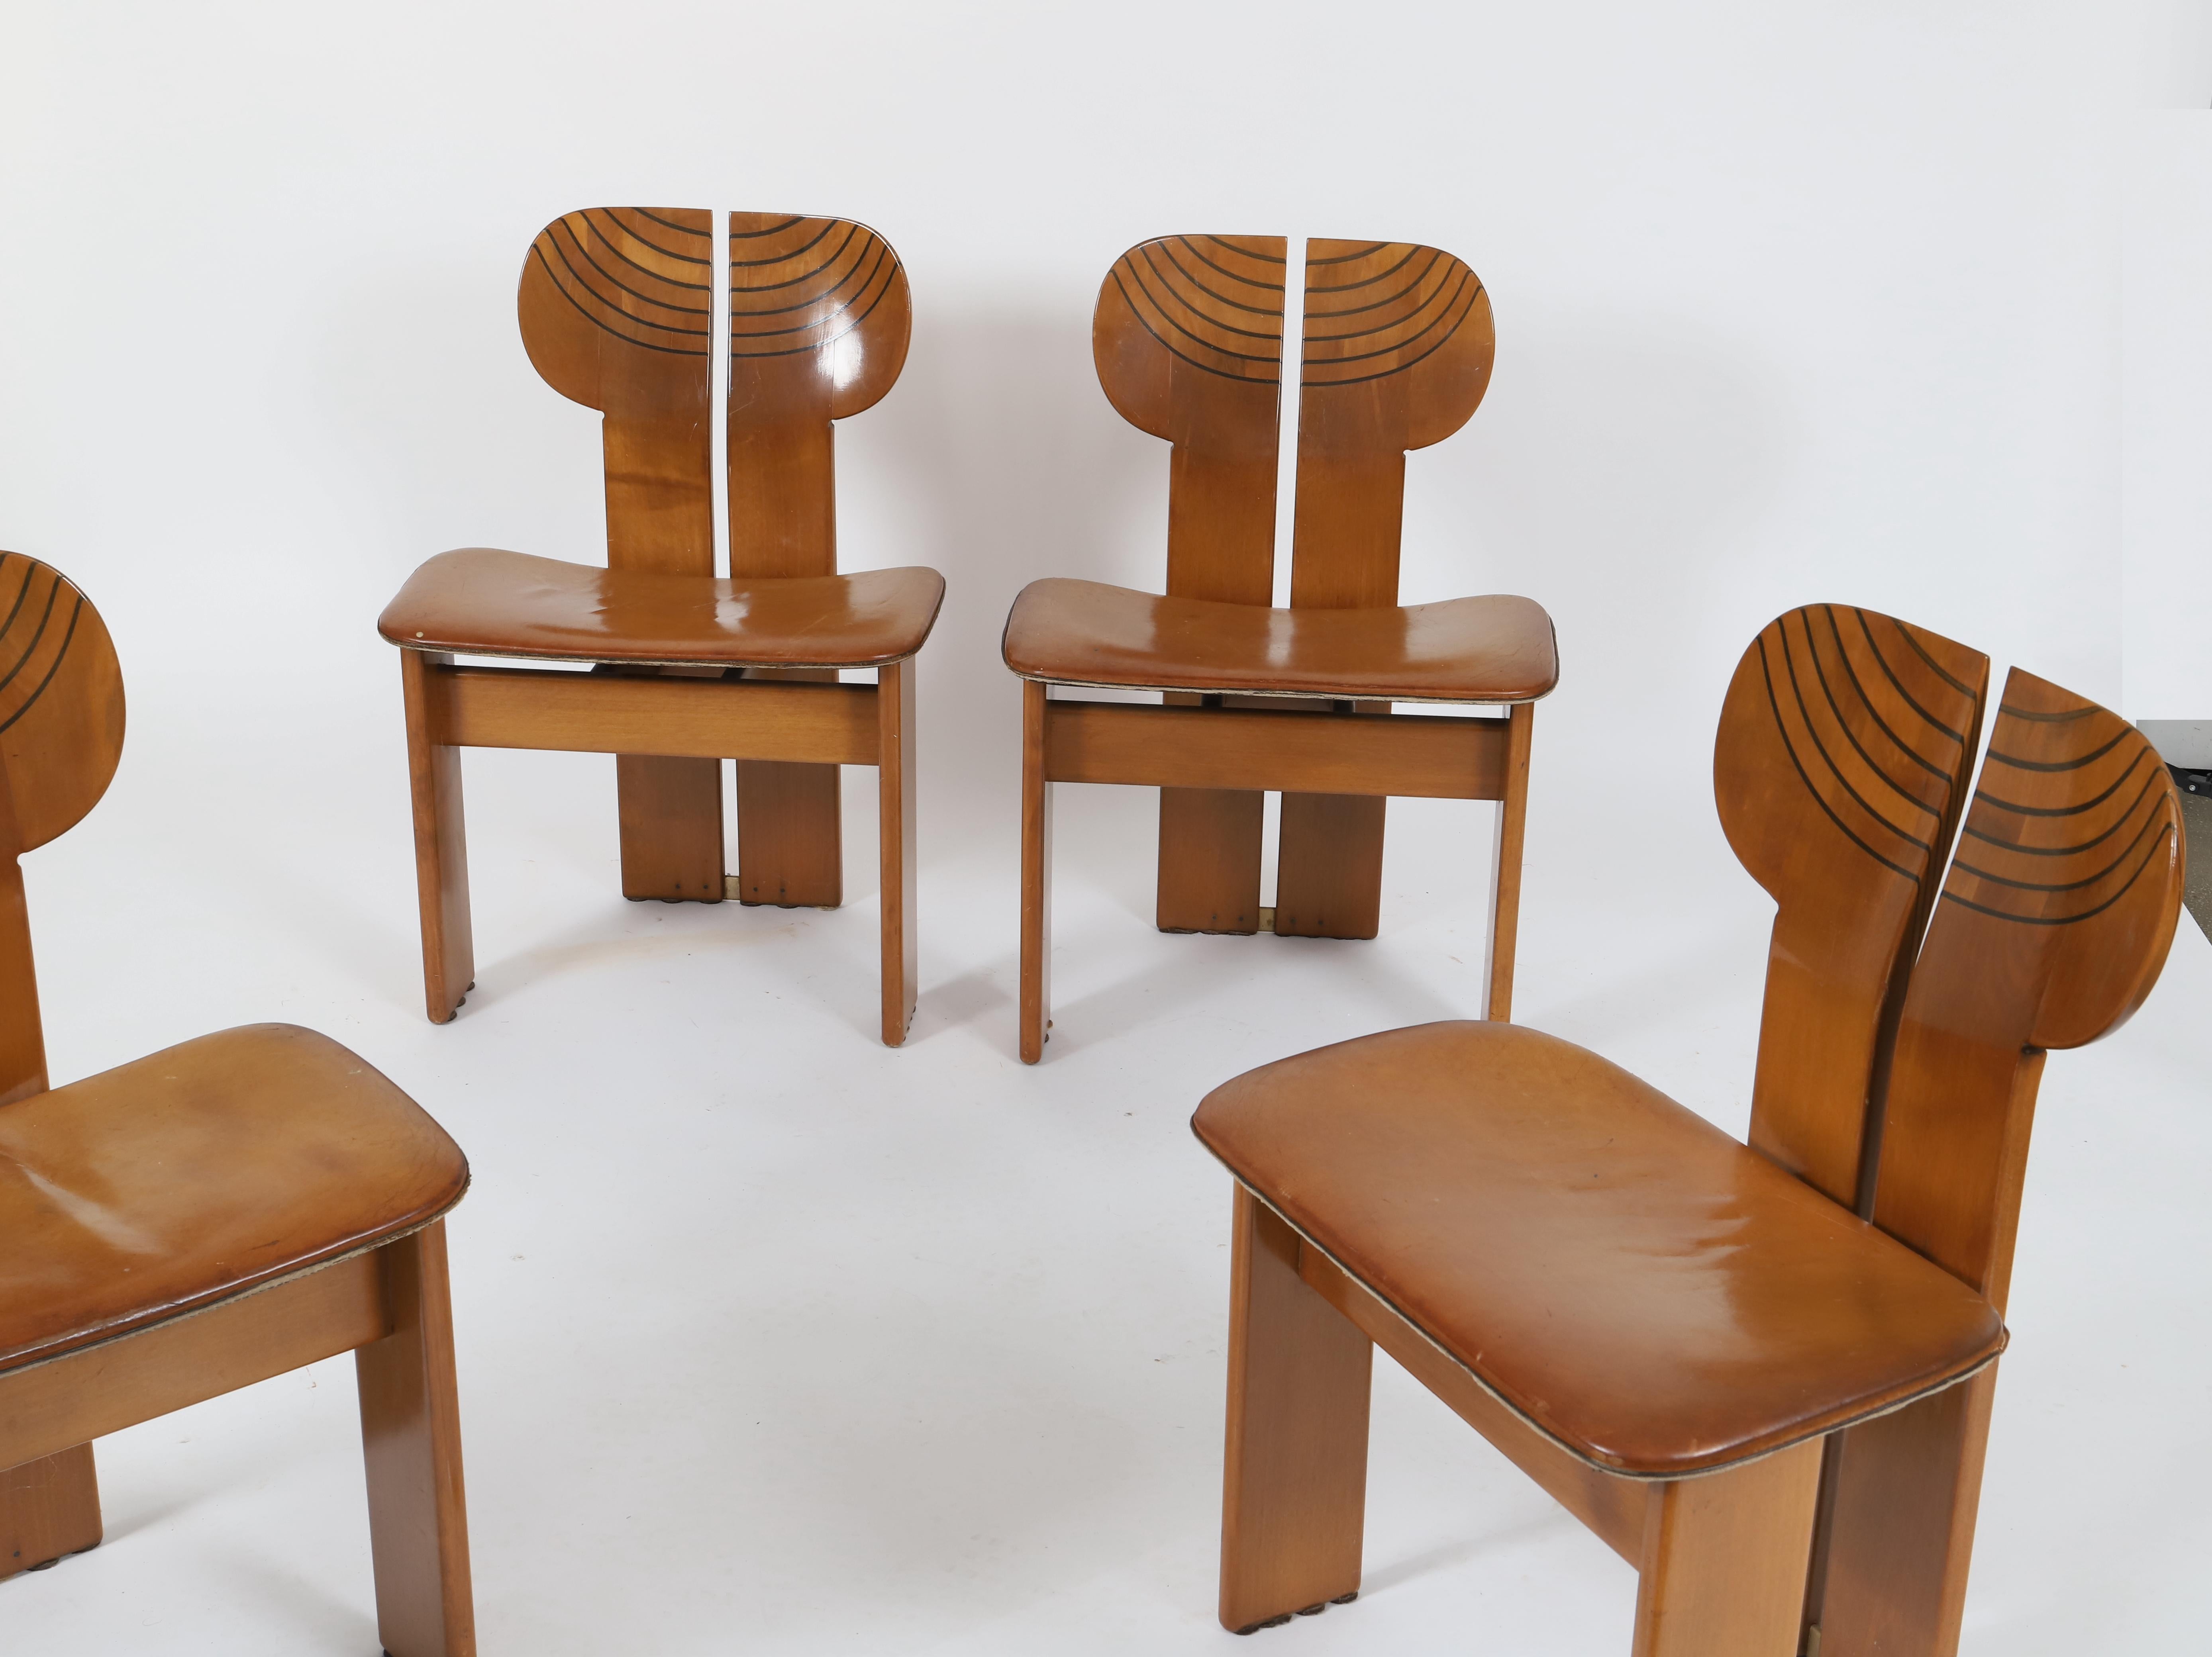 Afra (1937-2011) & Tobia Scarpa (née en 1935)
Afrique
Série Artona
Table de salle à manger et quatre chaises
Noyer, ébène, cuir et laiton
Édité par Maxalto
Modèle créé en 1975